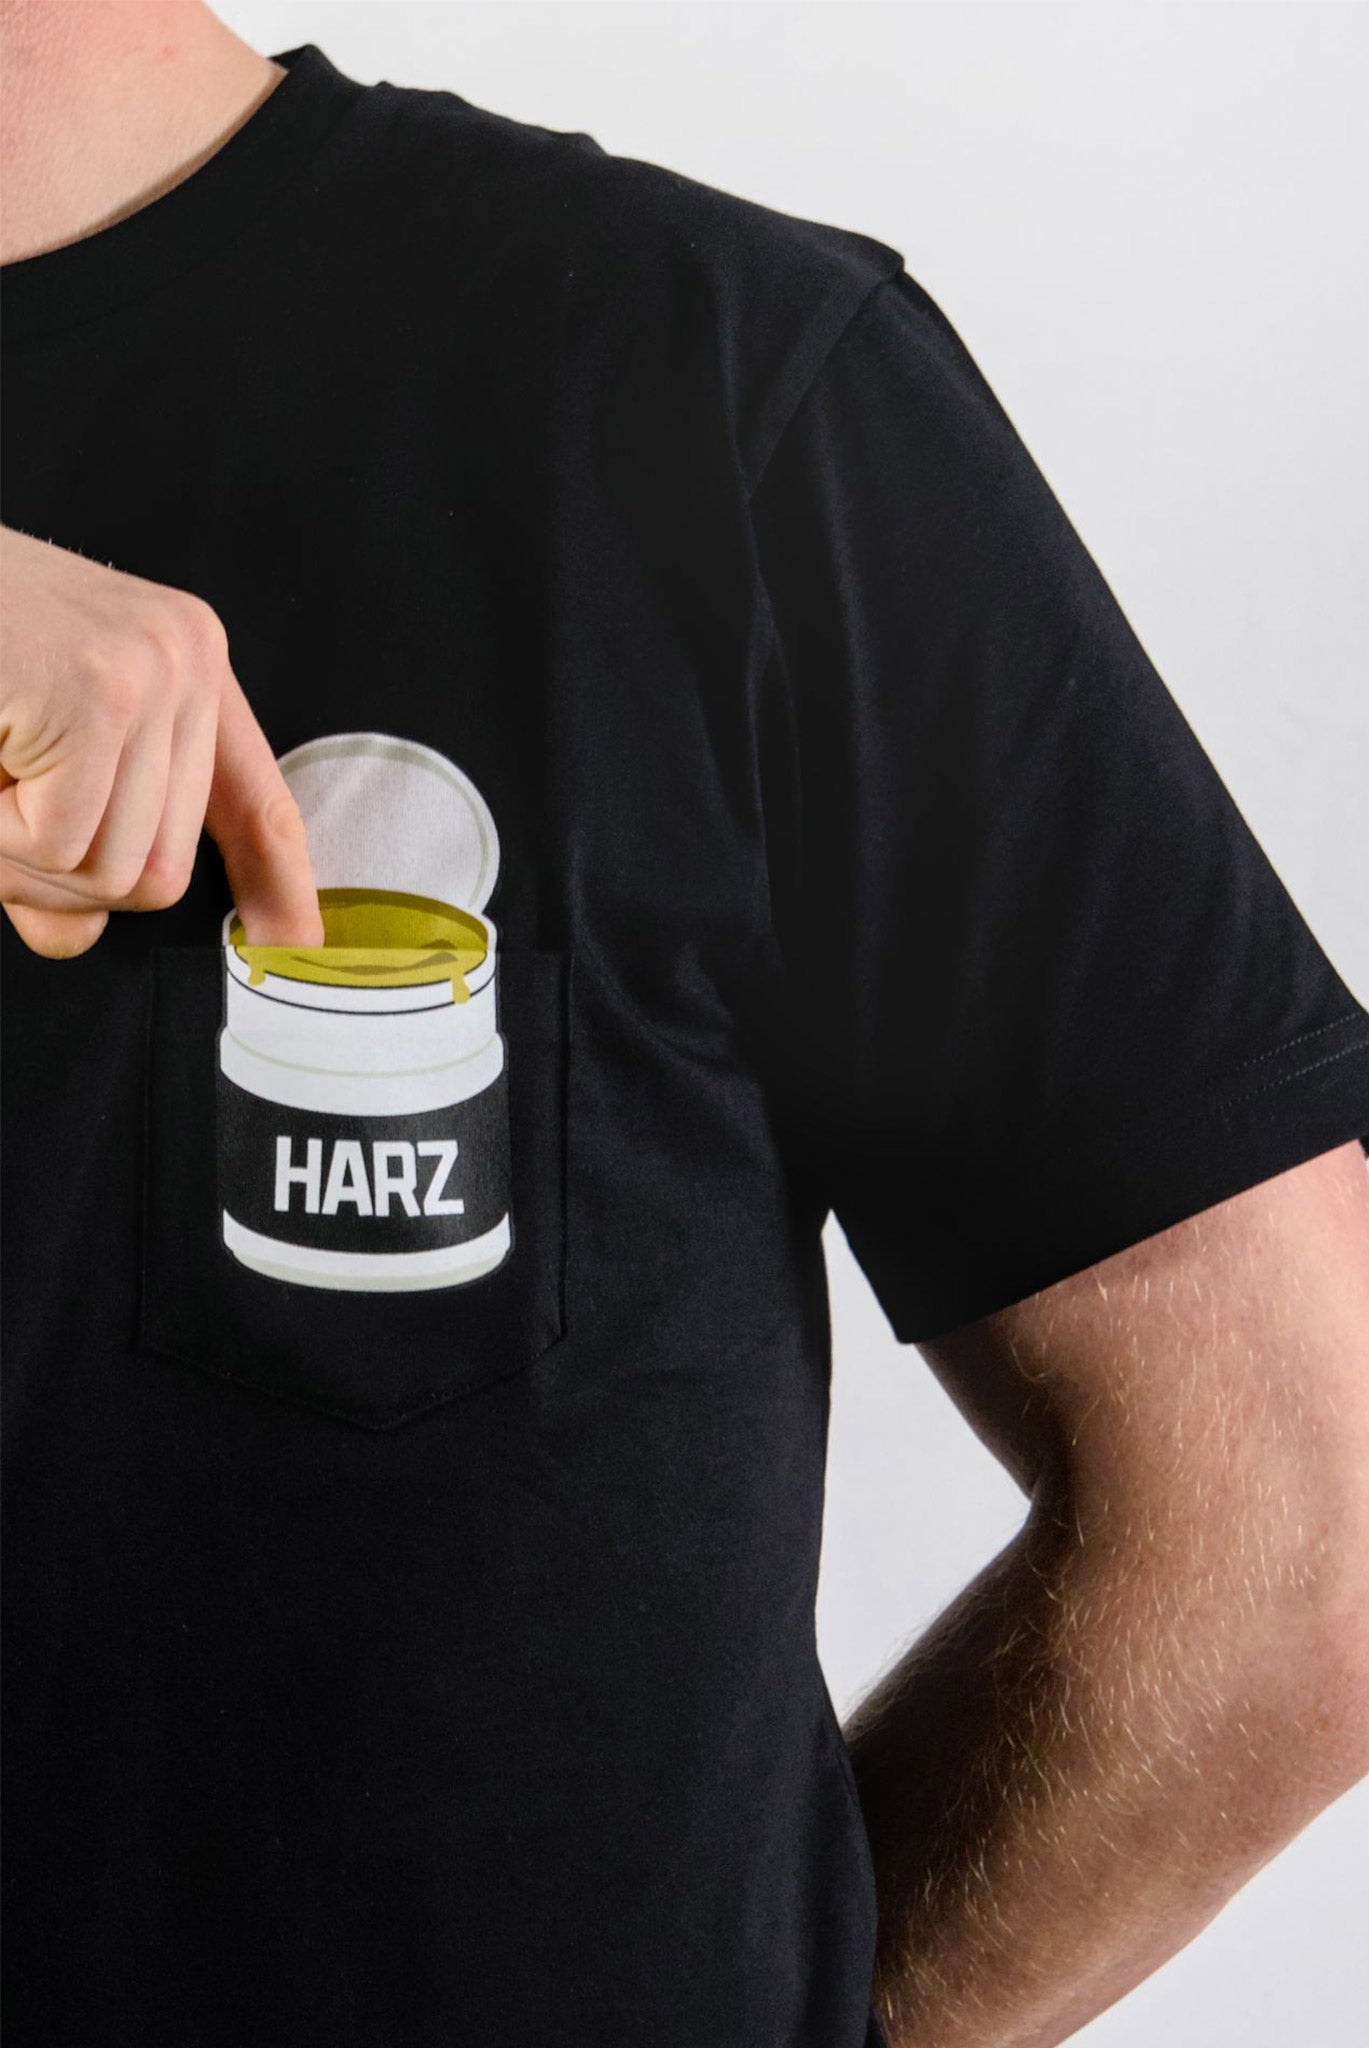 Handball Harz T-Shirt Brusttasche mit Harzdose zum reingreifen